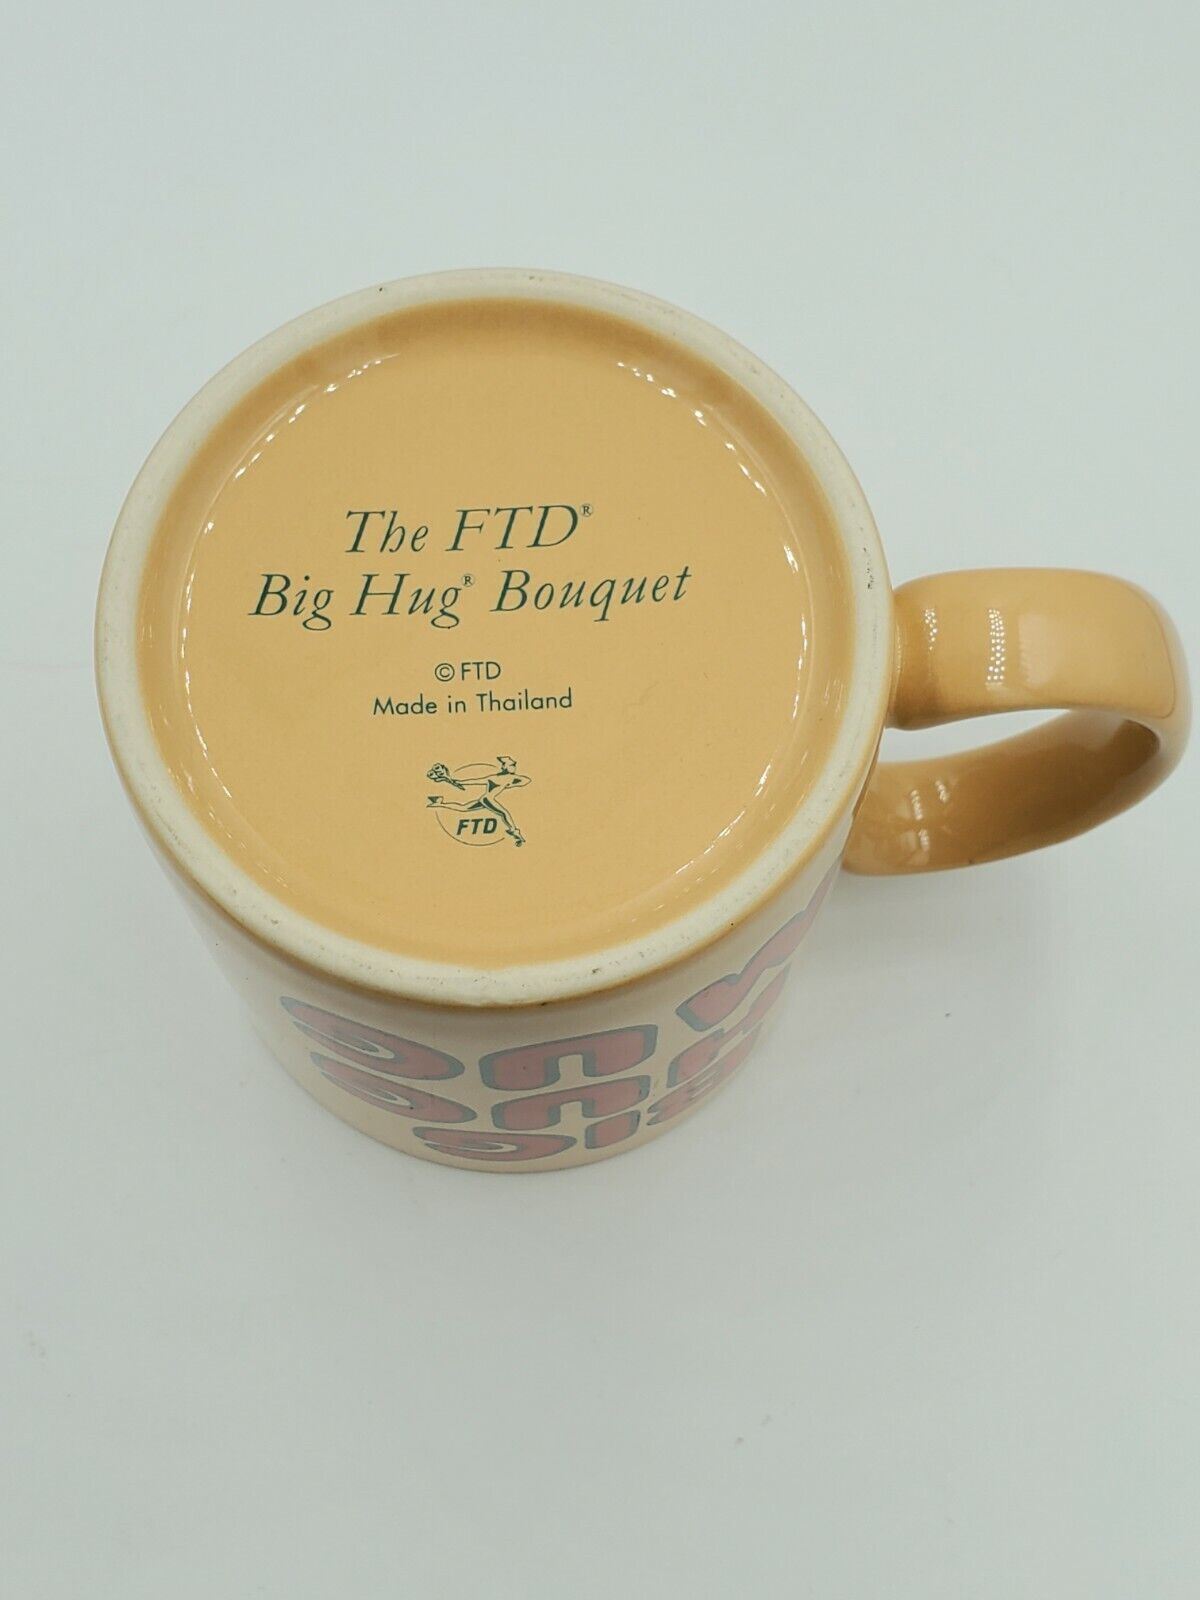 Big Hug Mug Vintage Ceramic Coffee Cup